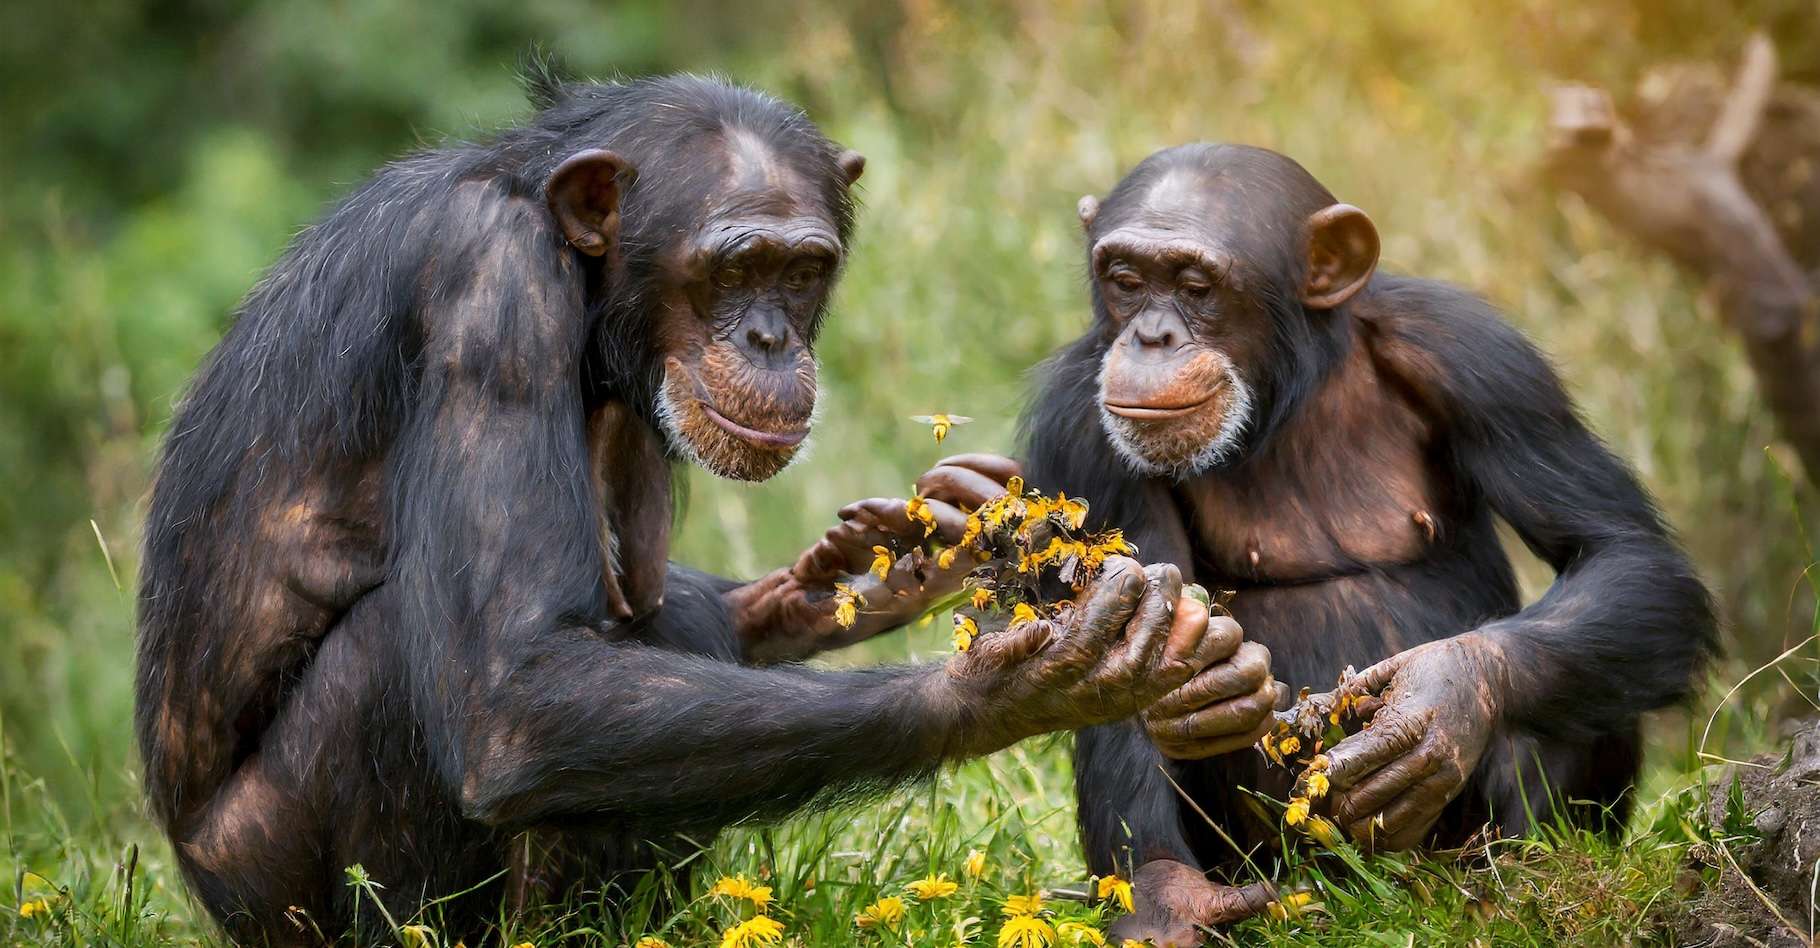 Les bourdons et les chimpanzés sont des petits génies, voici pourquoi